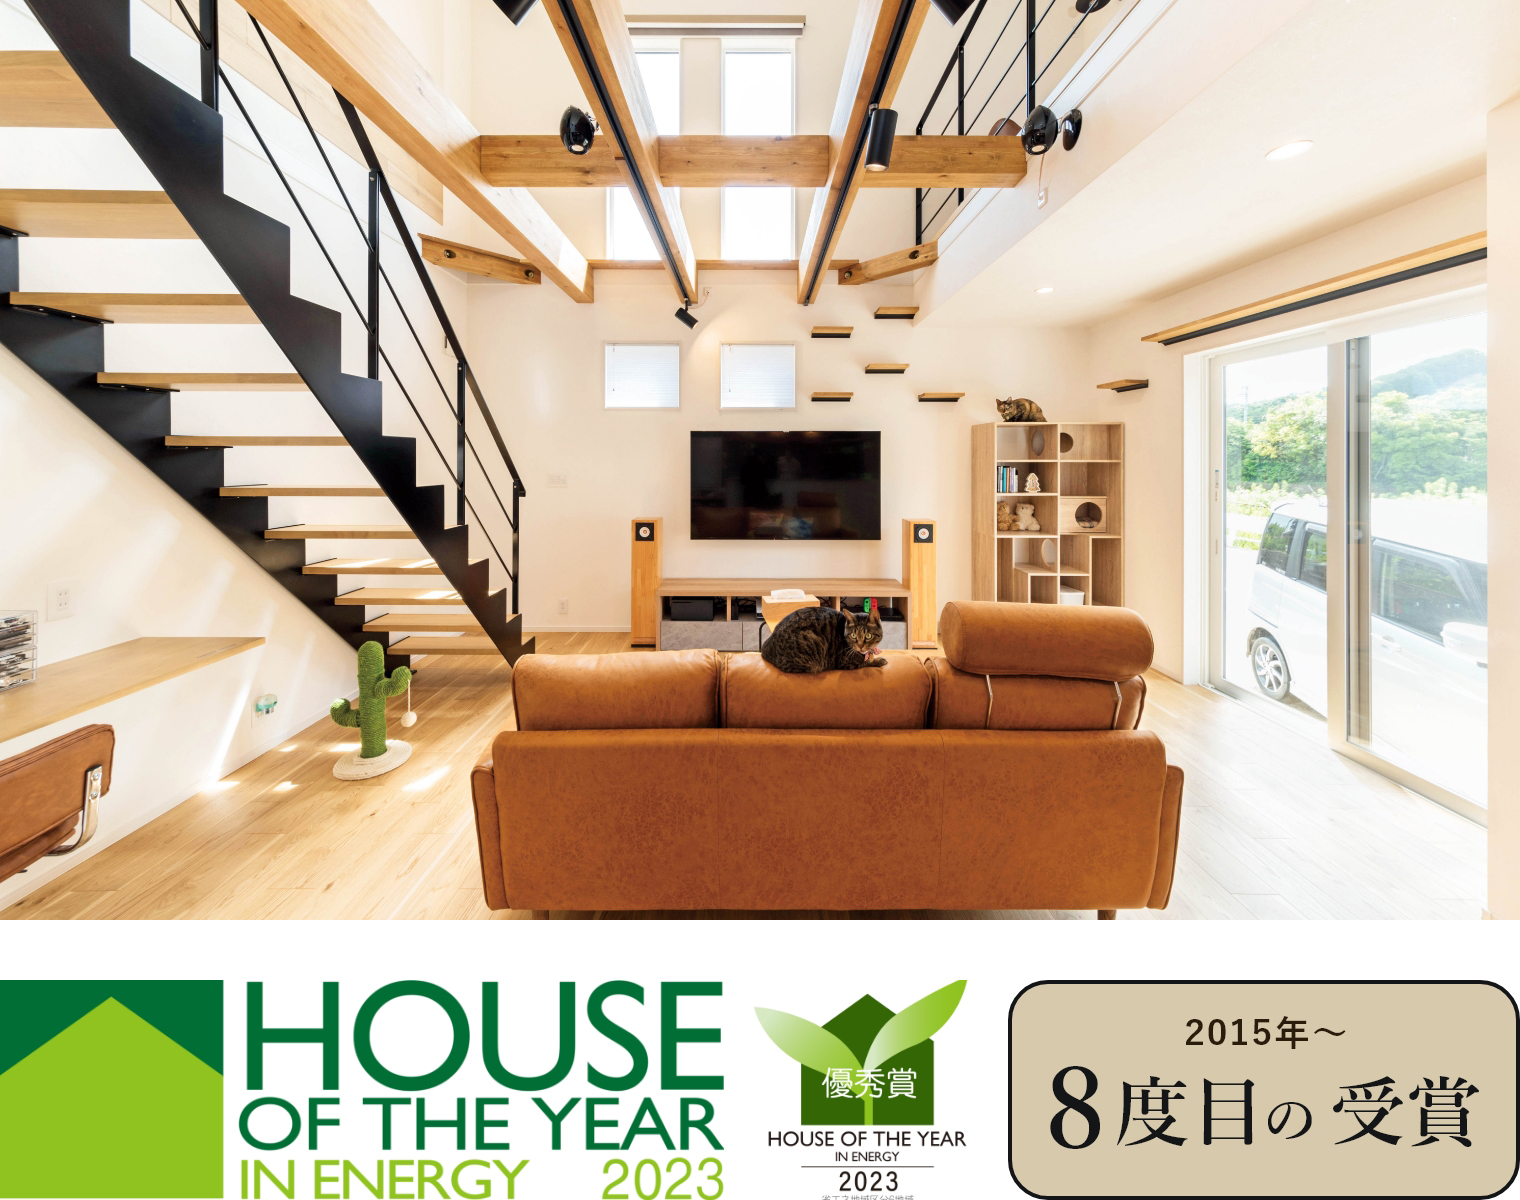 ハウス・オブ・ザ・イヤー・イン・エナジーの優秀賞2015年～6度目の受賞